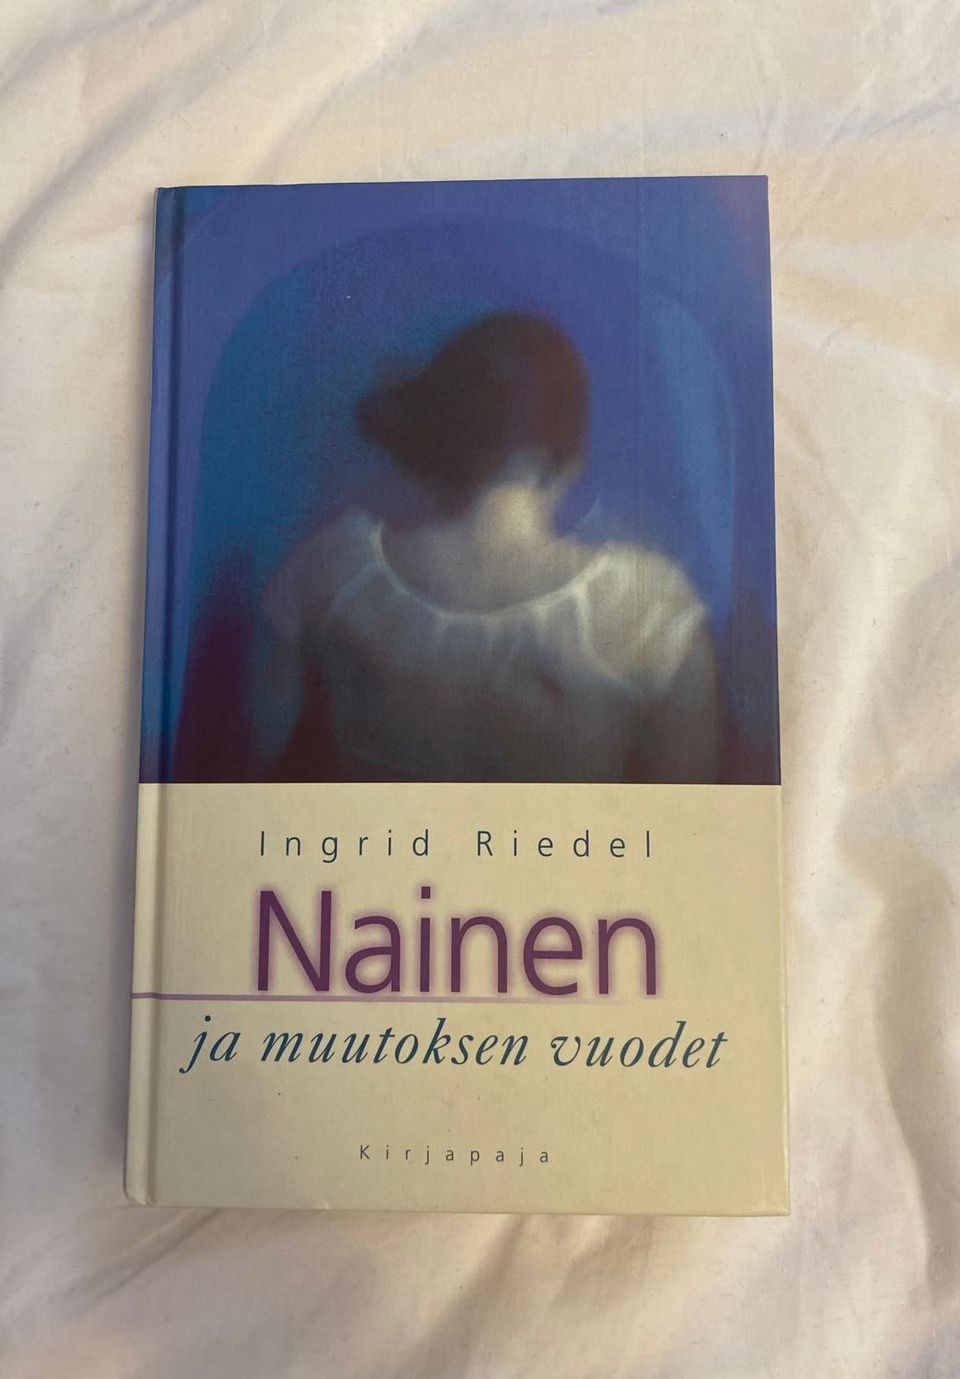 INGRID RIEDEL  Nainen ja muutoksen vuodet  Kirjapaja 2000